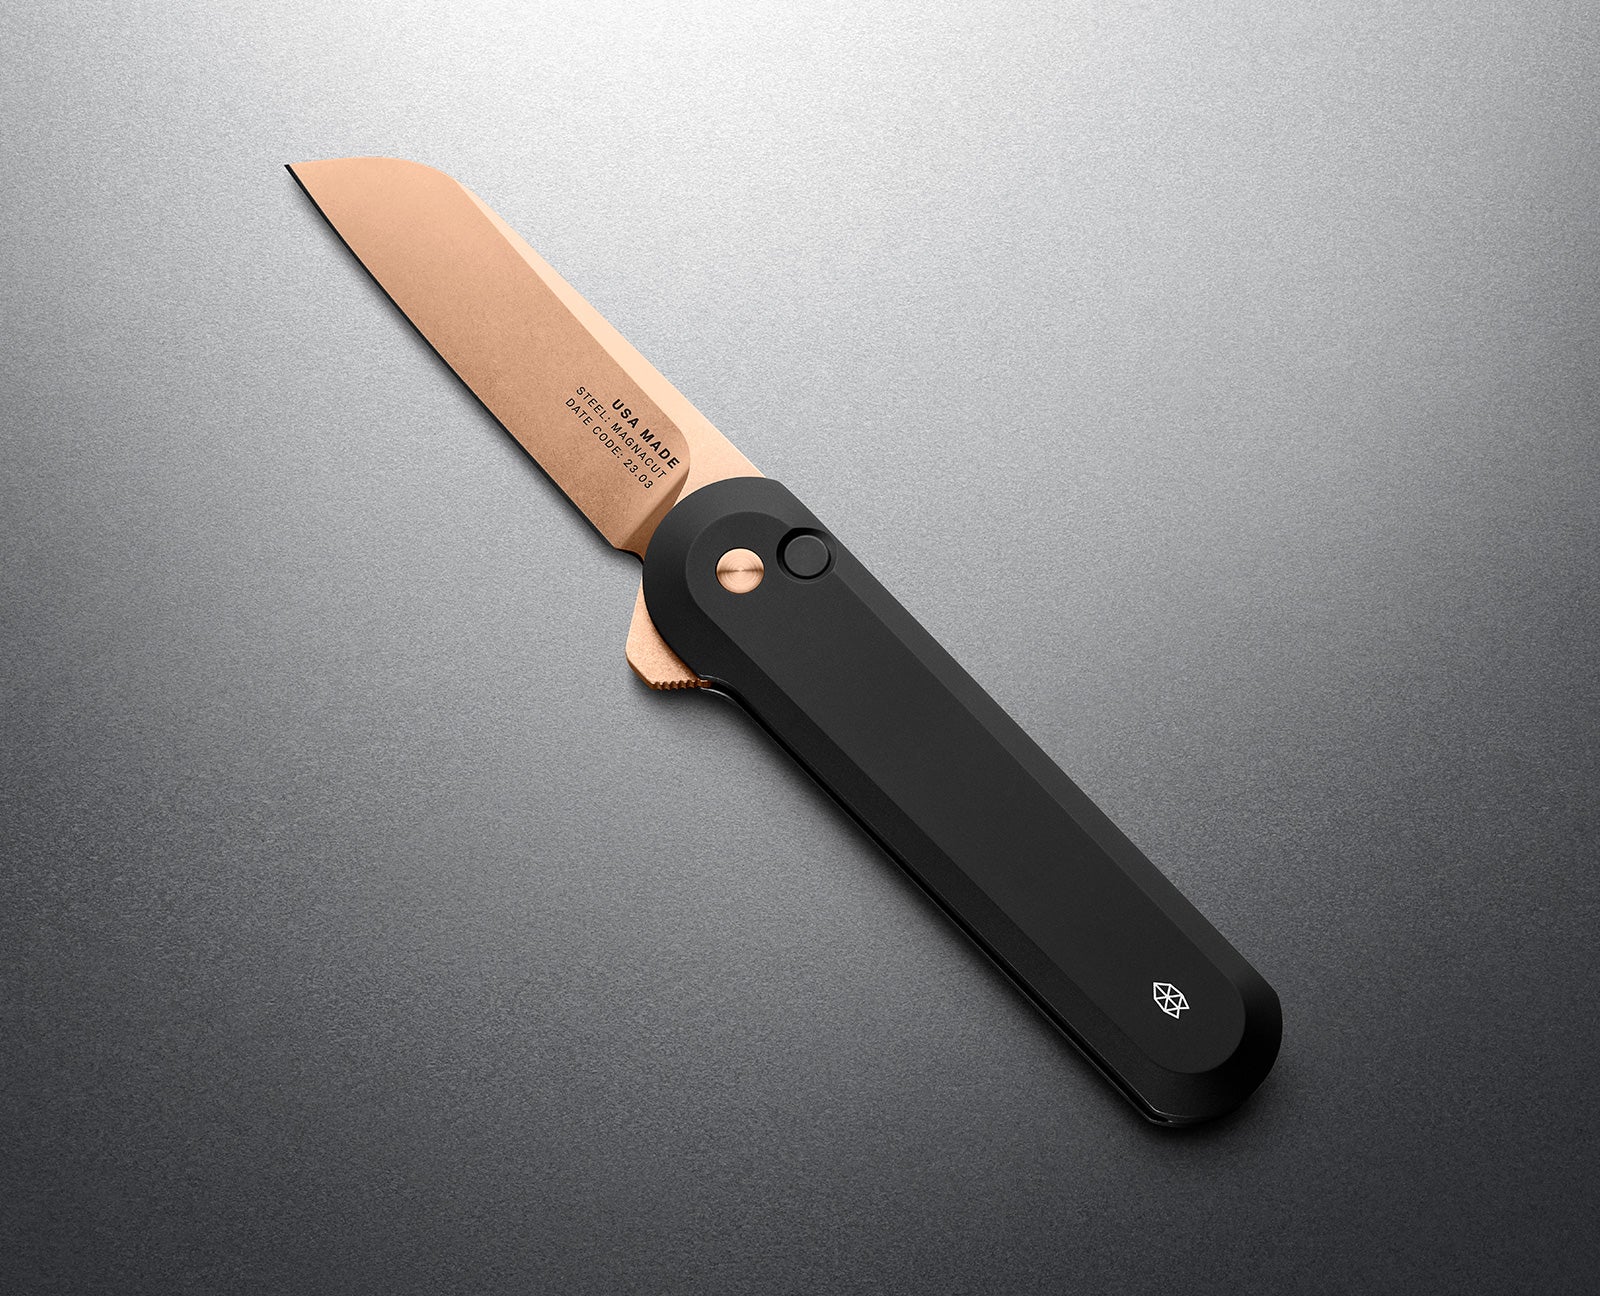 Copper Knife Set, A Knife Set with Sharpener Built-in, Upright 6-Piece Rose Gold